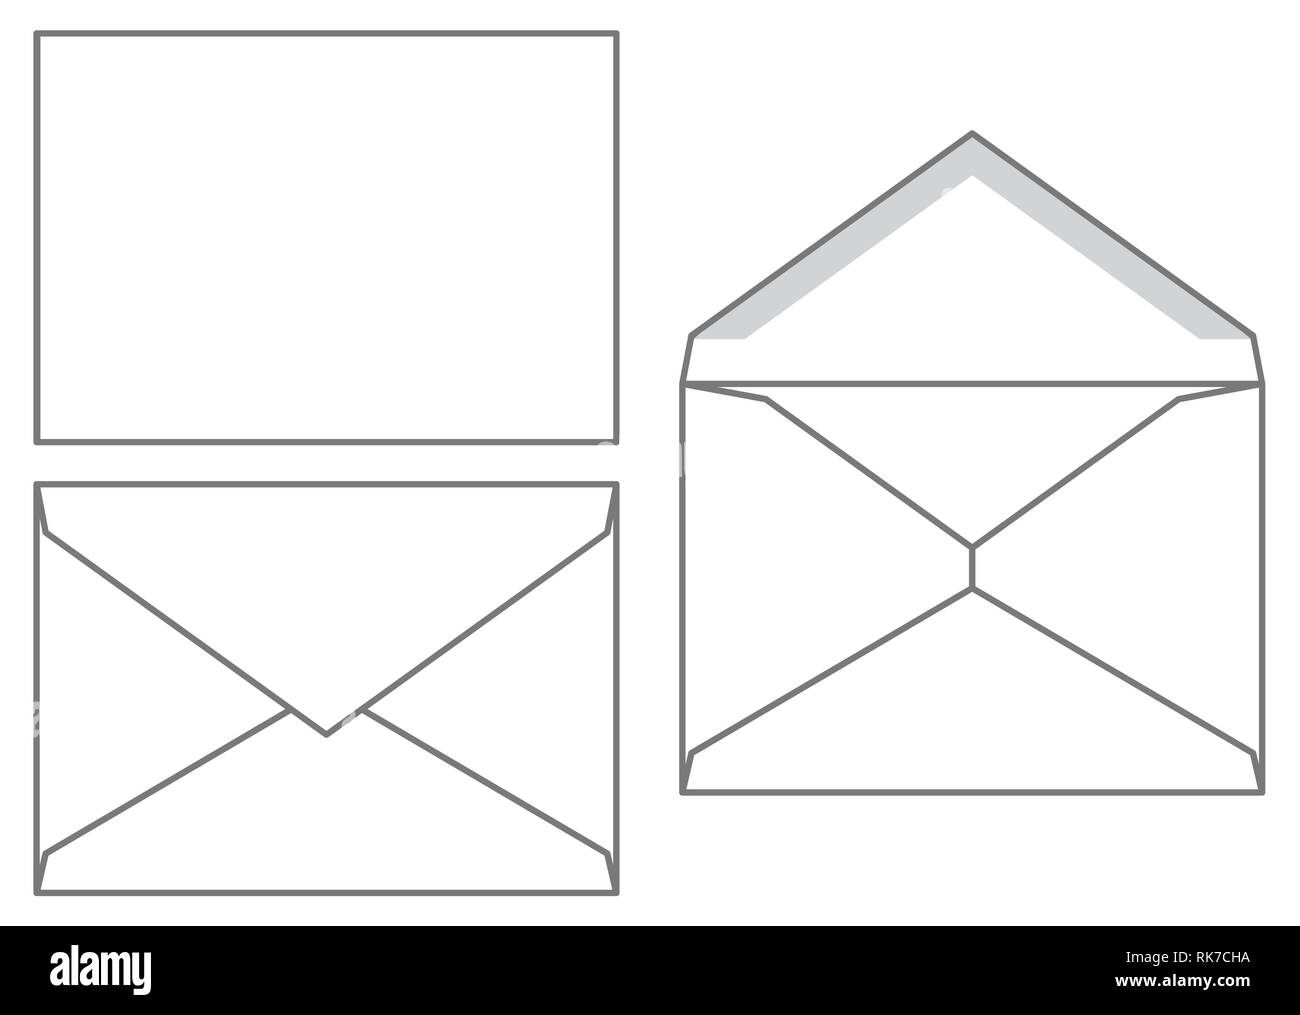 Envelope template immagini e fotografie stock ad alta risoluzione - Alamy